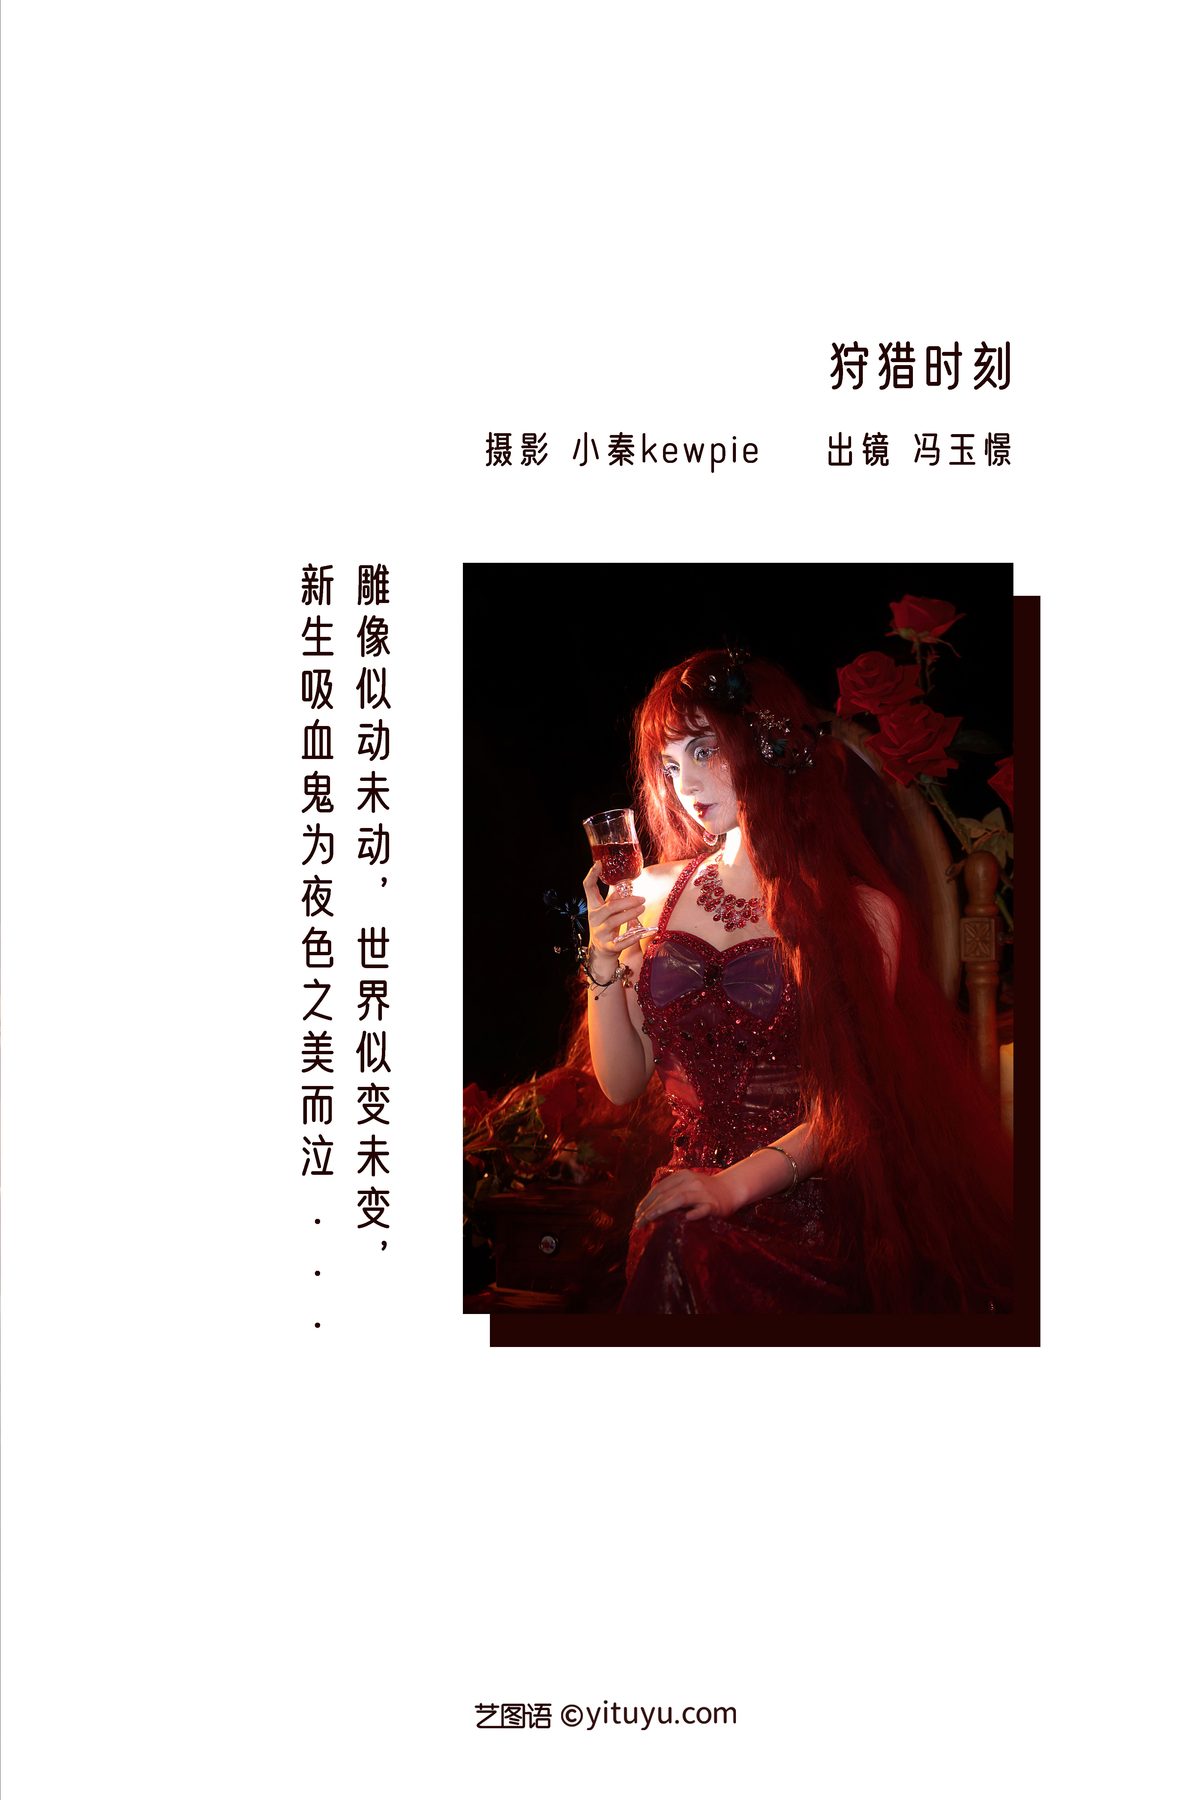 YiTuYu艺图语 Vol 3351 Feng Yu Jing 0001 1772742735.jpg